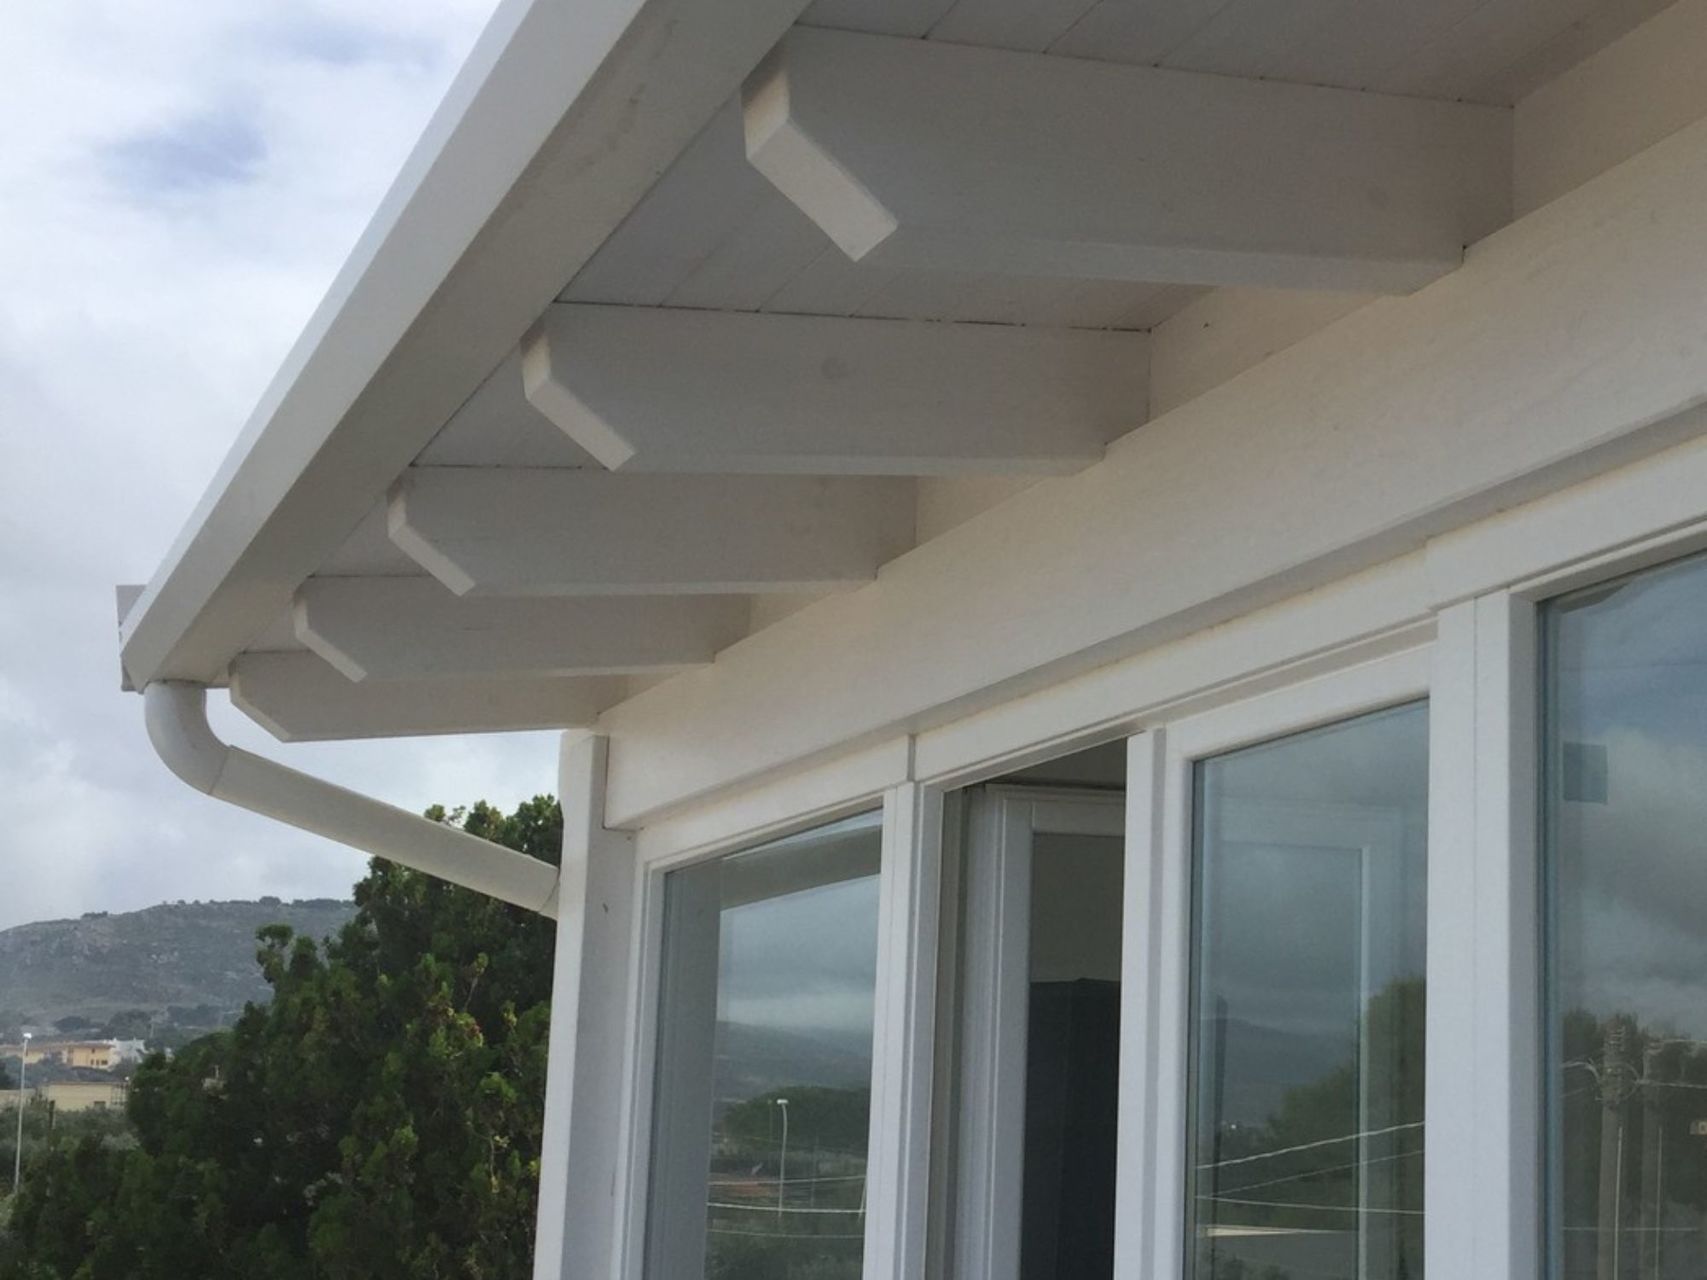 DIMA Legnami - Soluzione di rivestimento tetto interno con travi in legno  lamellare di Abete.